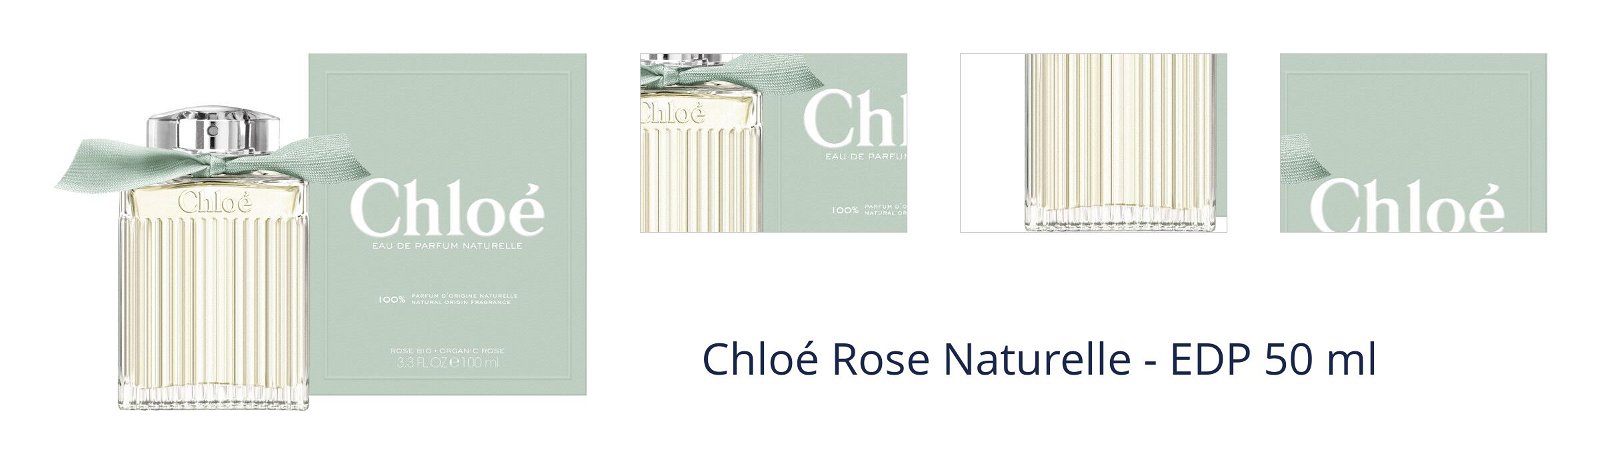 Chloé Rose Naturelle - EDP 50 ml 1